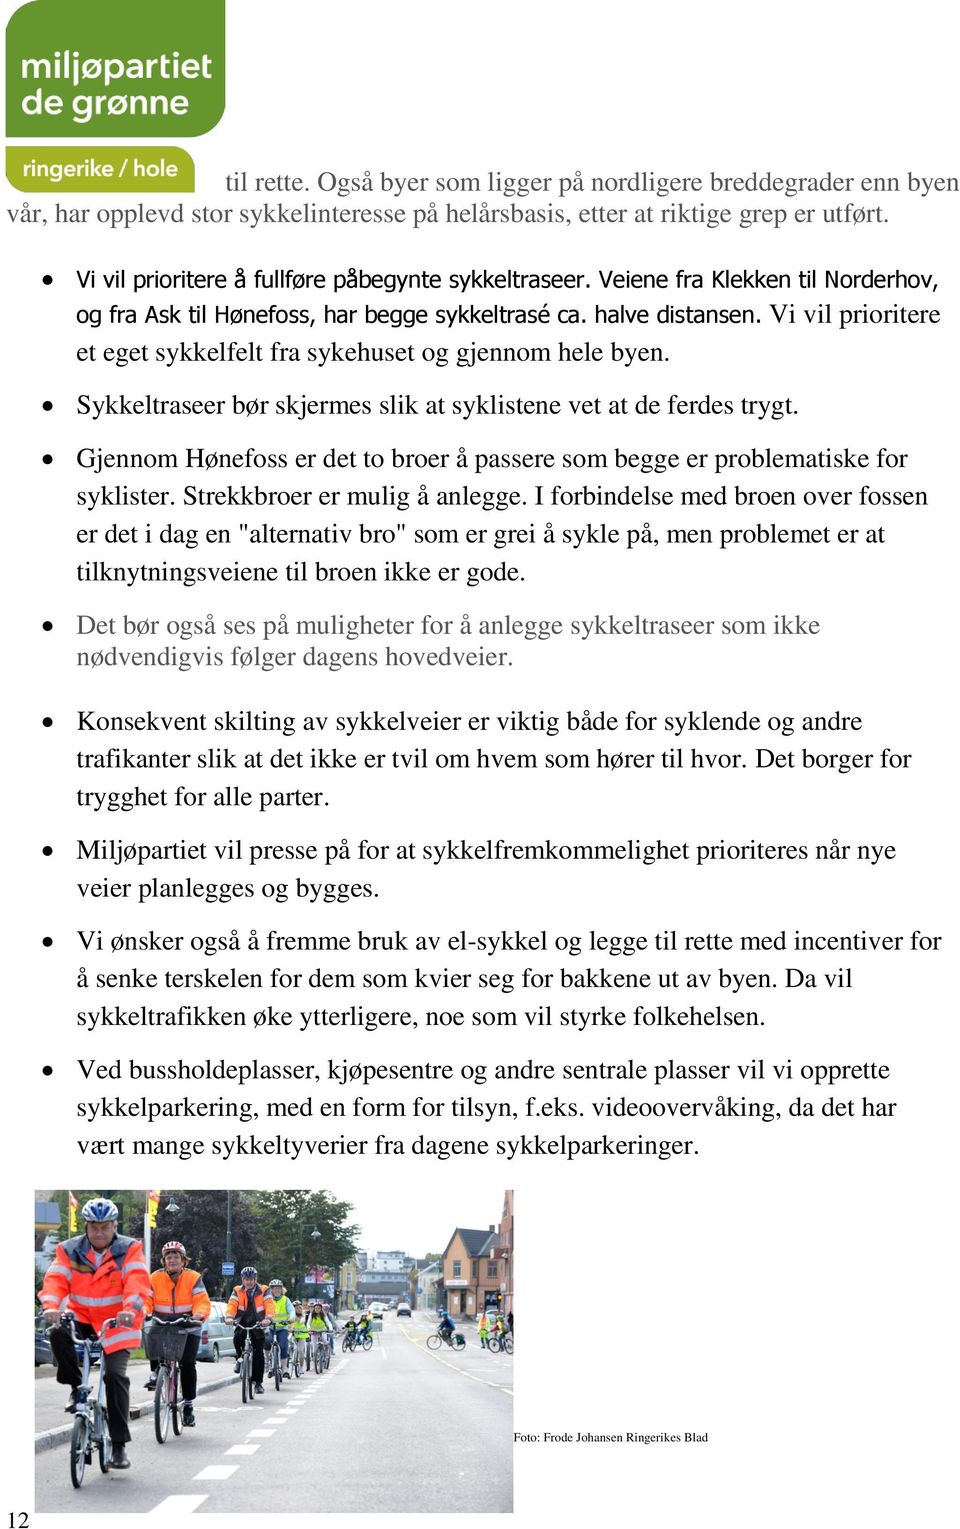 Vi vil prioritere et eget sykkelfelt fra sykehuset og gjennom hele byen. Sykkeltraseer bør skjermes slik at syklistene vet at de ferdes trygt.